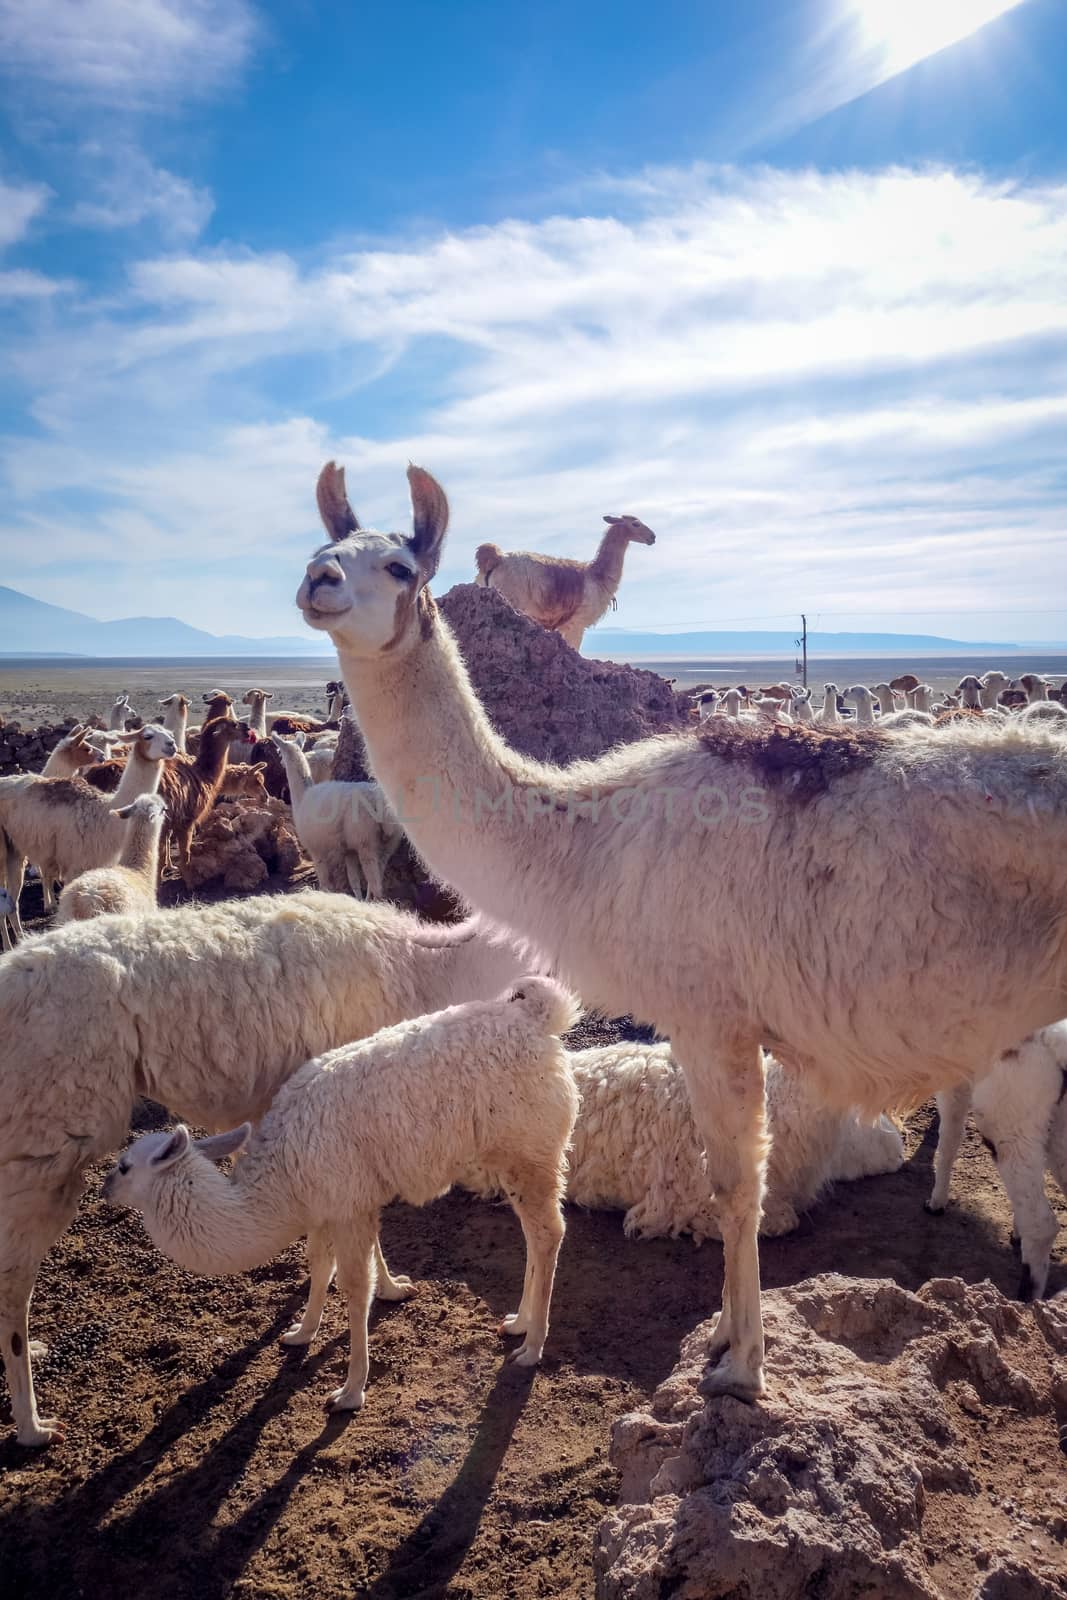 Lamas herd in Bolivia by daboost